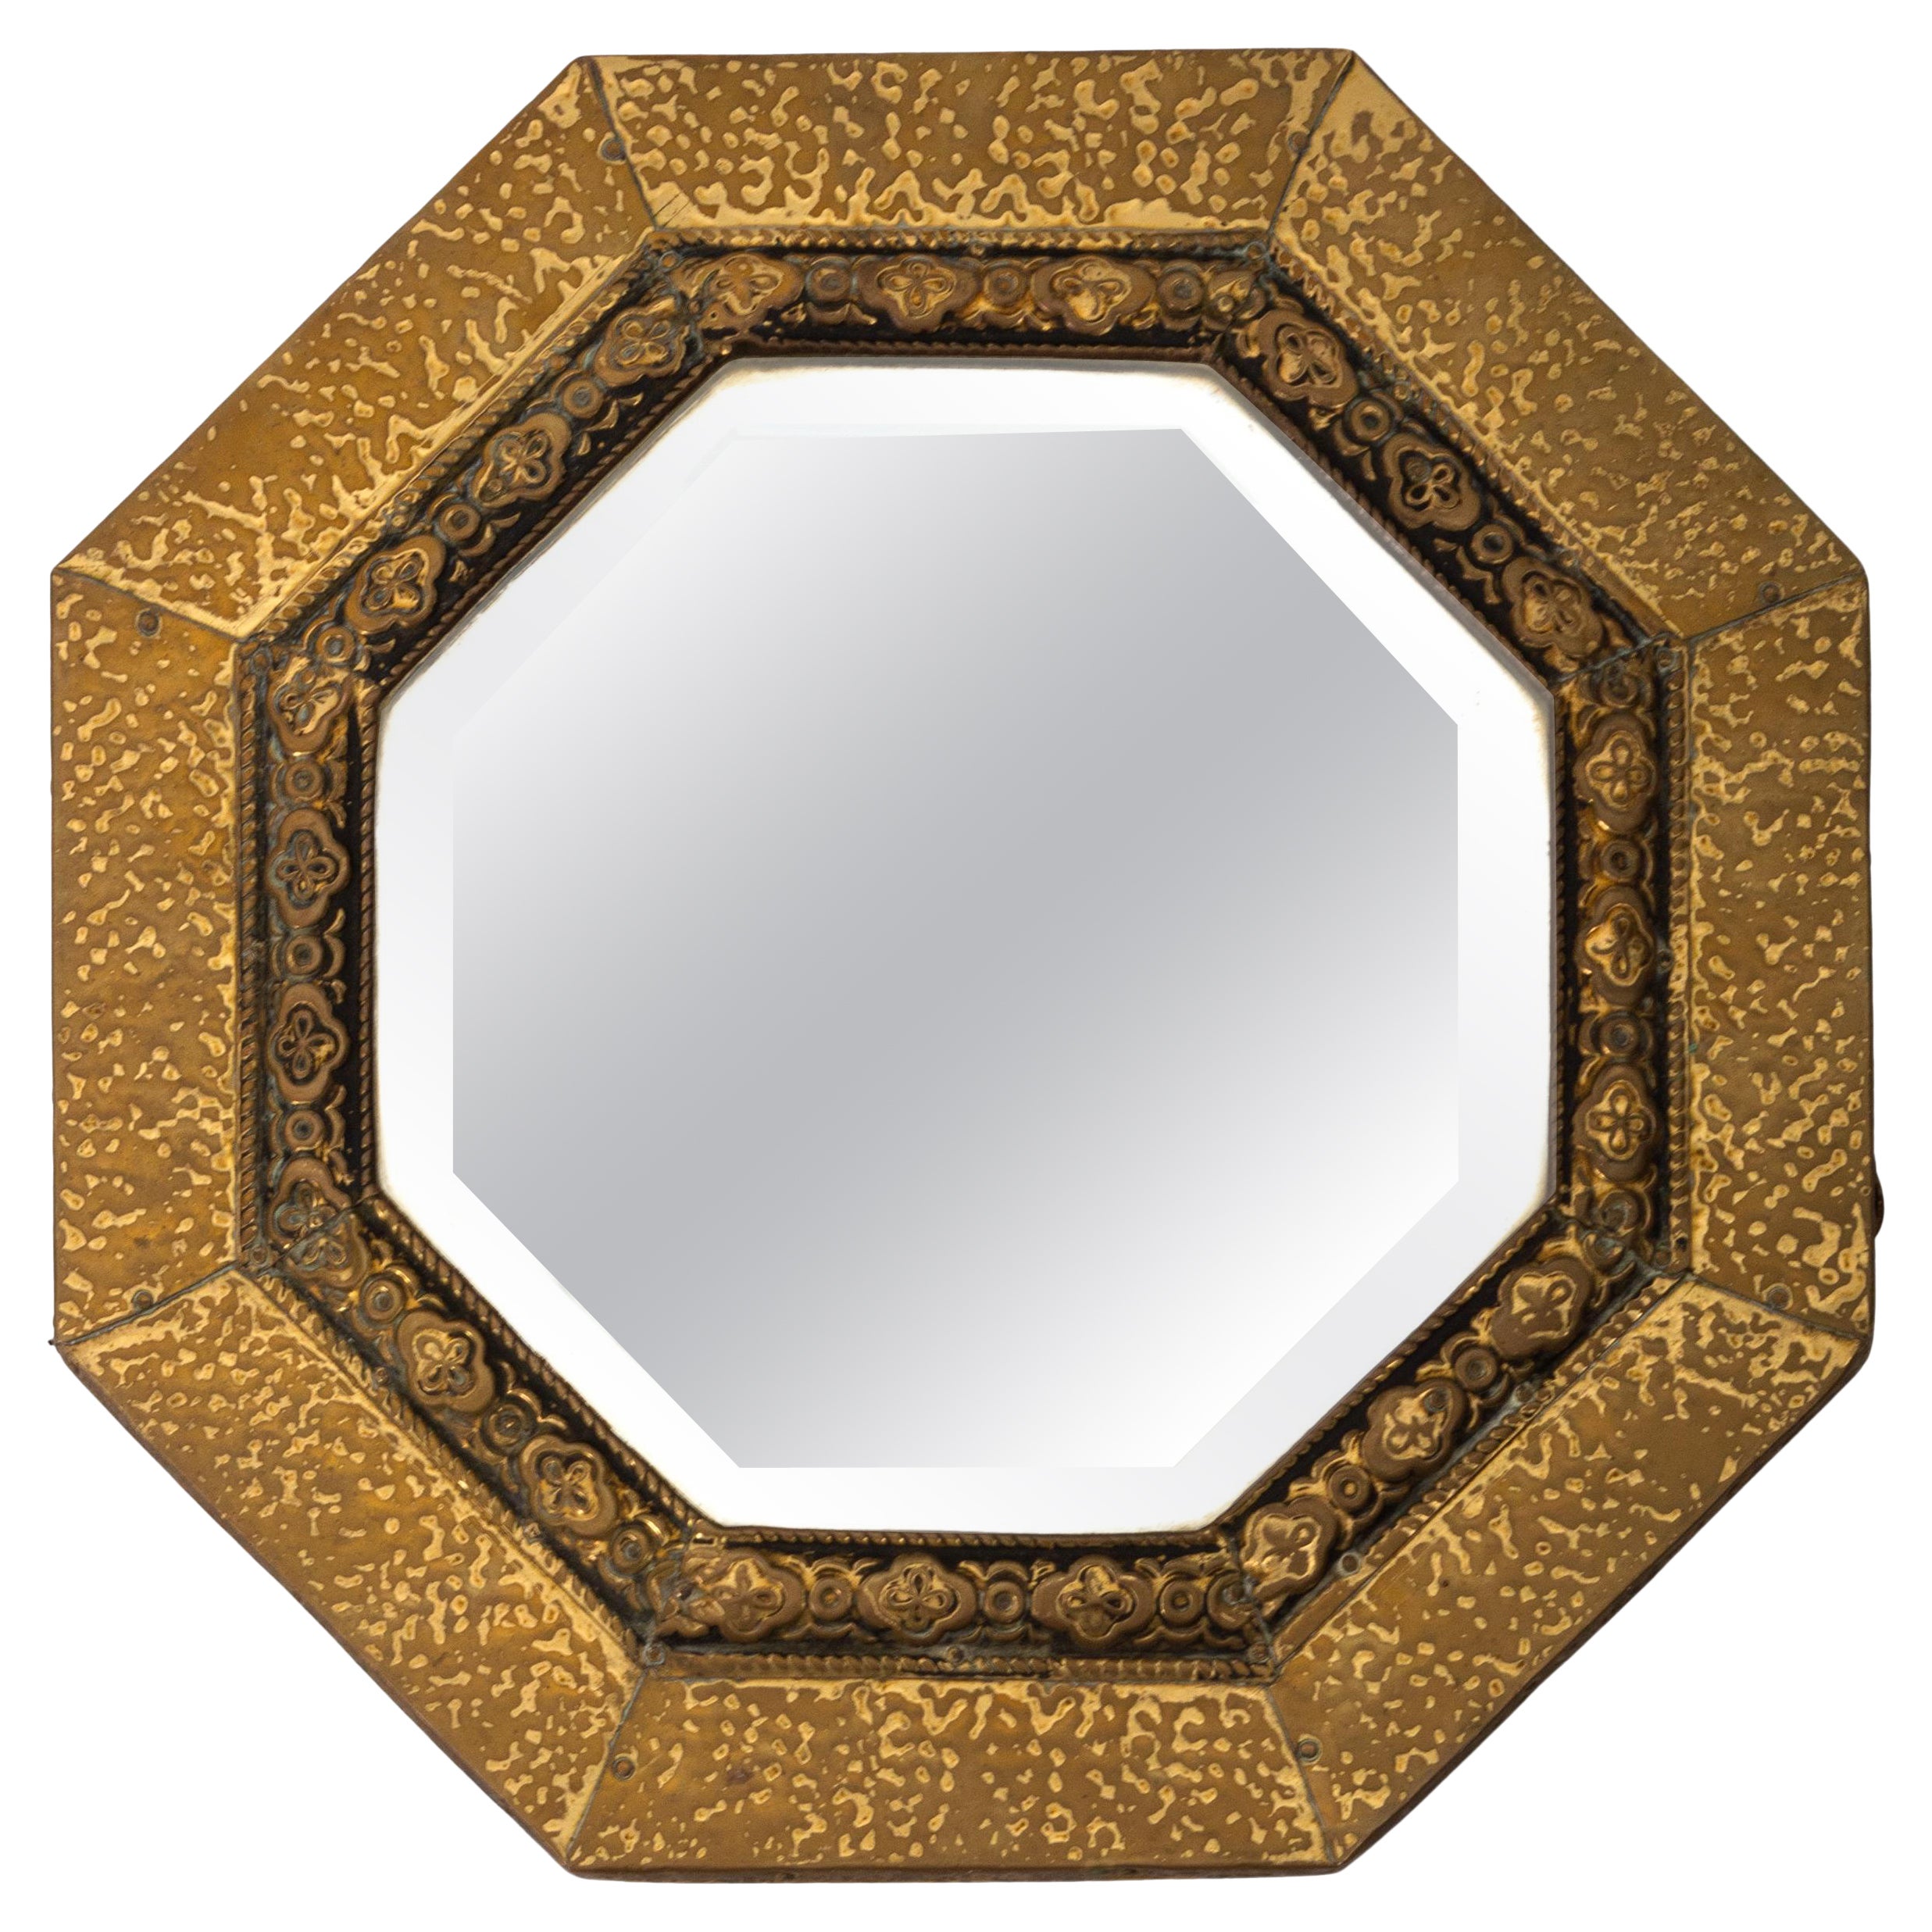 Antique English Arts & Crafts Octagonal Hammered Brass Mirror C.1920